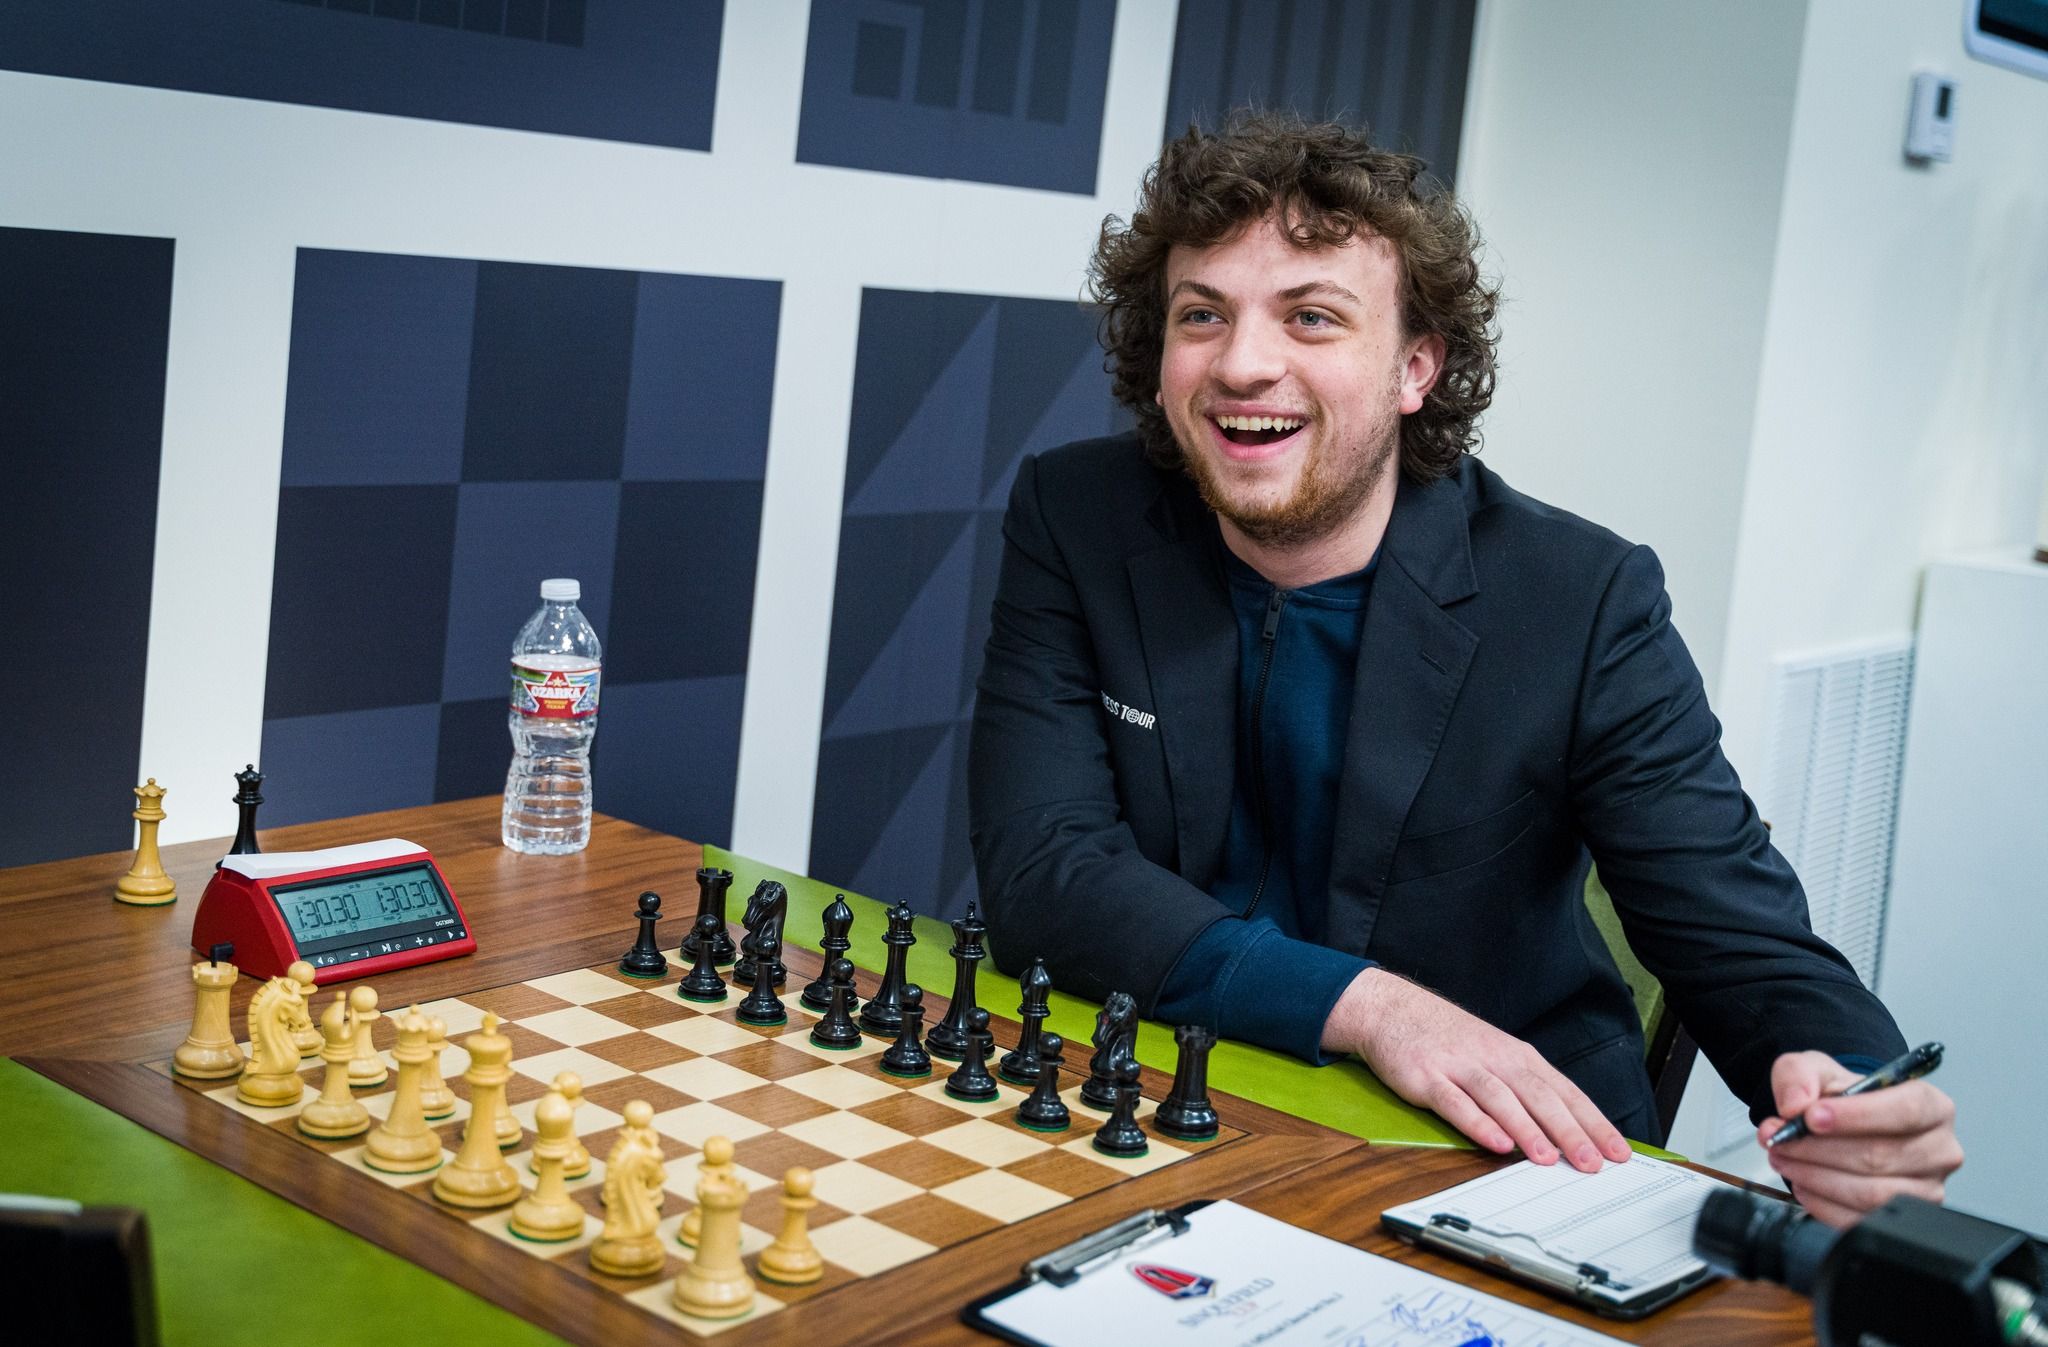 Una web erótica ha retado a Hans Niemann ha jugar una partida de ajedrez desnudo para demostrar que no hizo trampas.